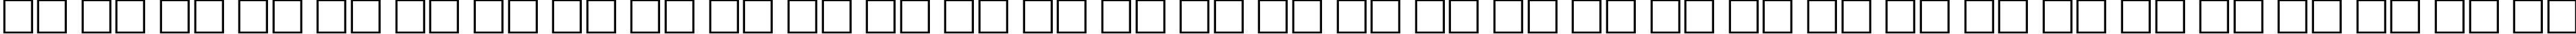 Пример написания русского алфавита шрифтом Antiqua Bold70b